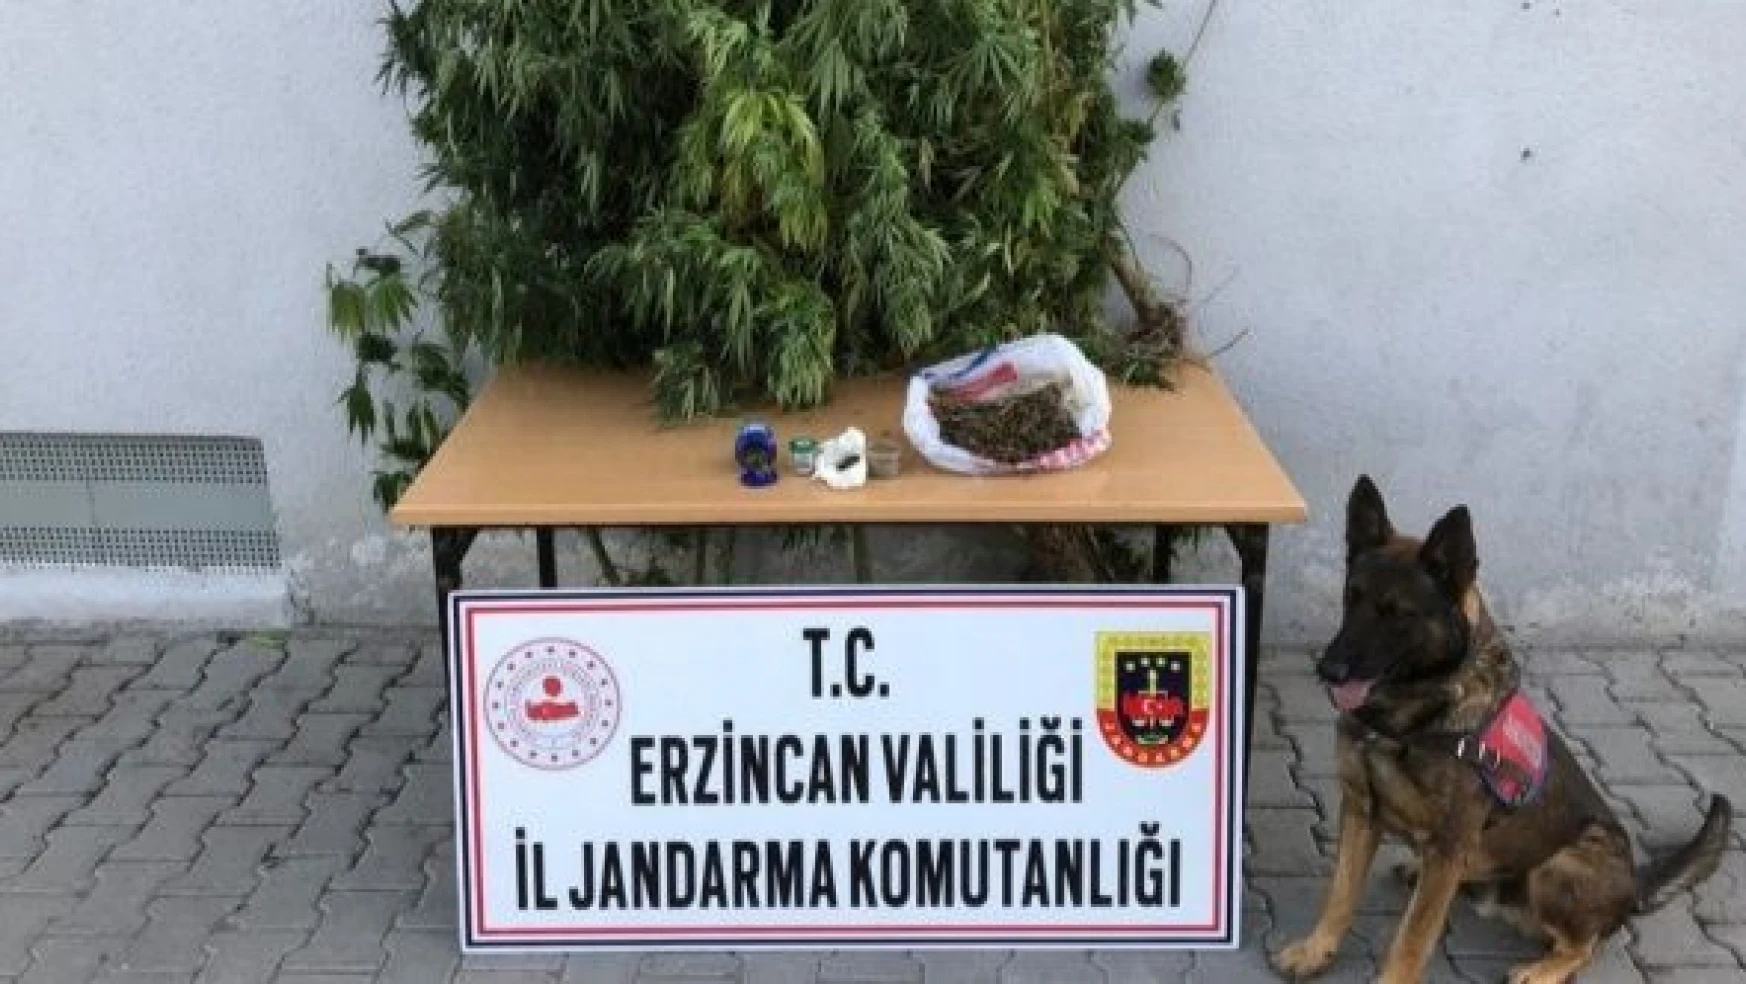 Erzincan'da uyuşturucu ve kaçak sigara yapımında kullanılan malzemeler ele geçirildi